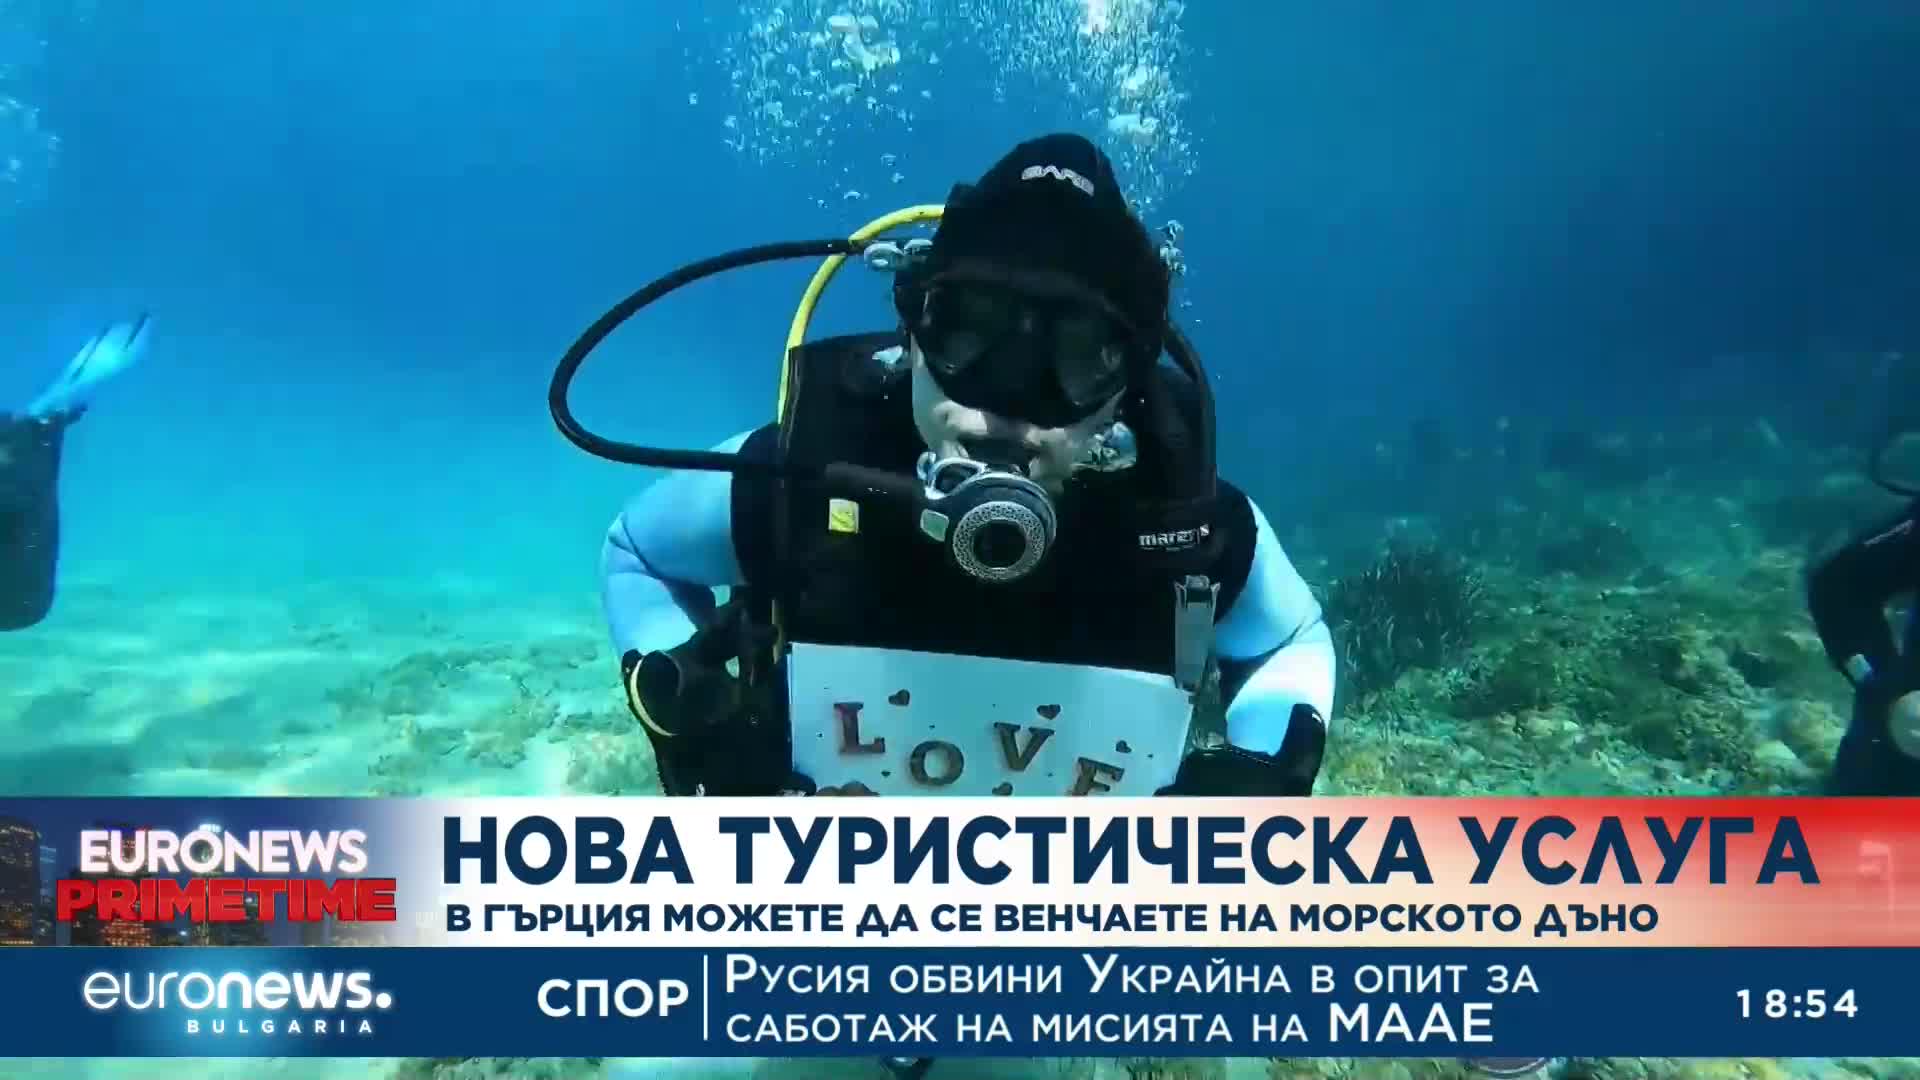 Необичайна туристическа услуга: В Гърция можете да се венчаете на морското дъно